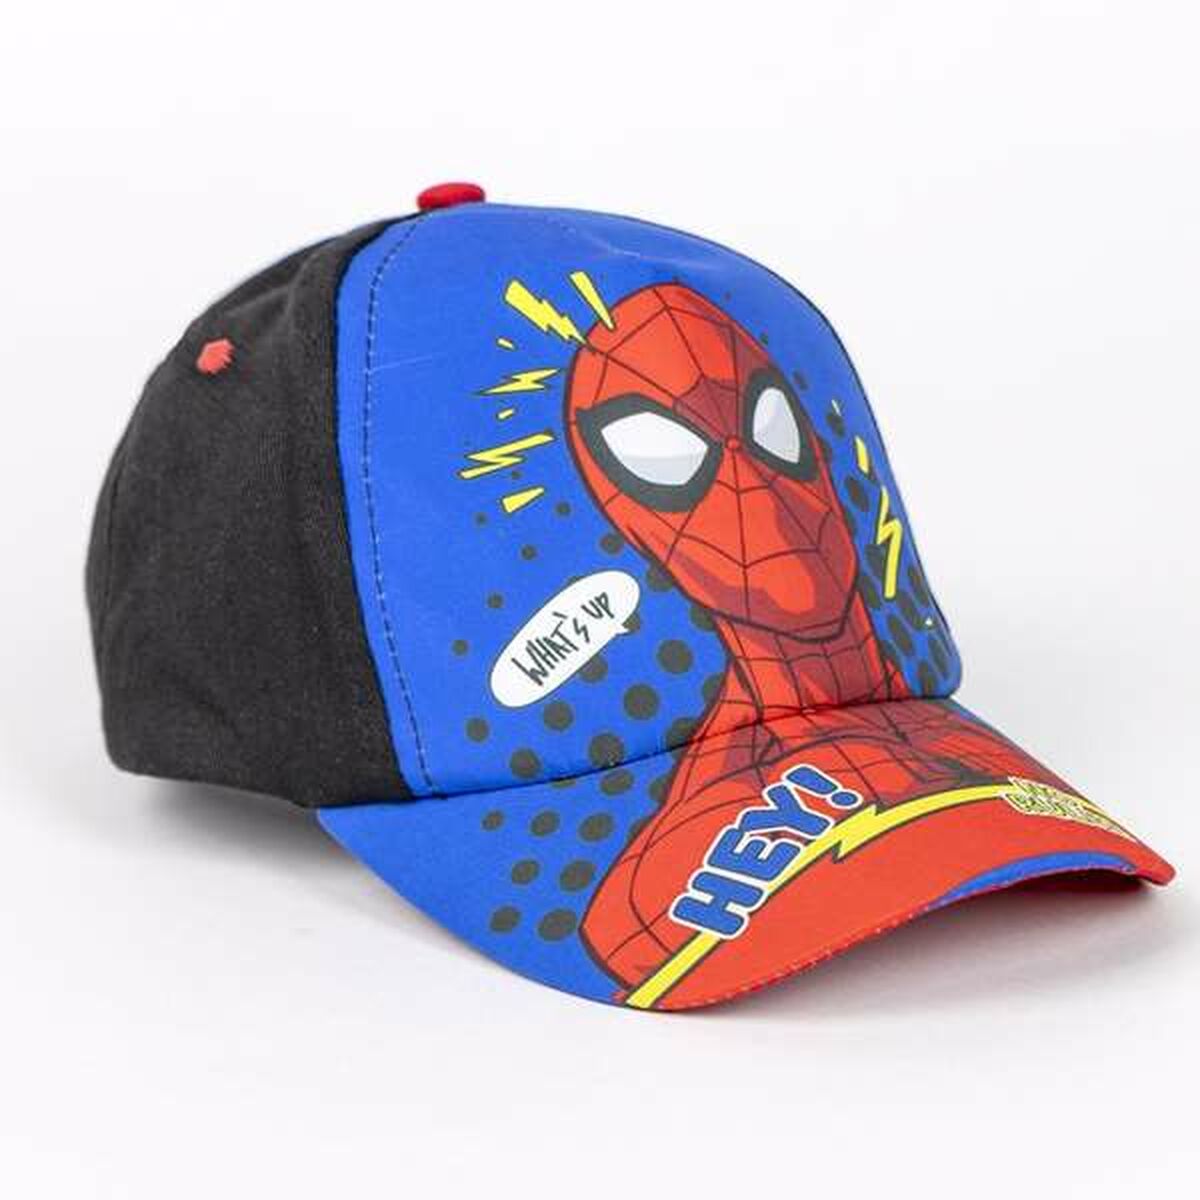 Set of cap and sunglasses Spider-Man Children's 2 Pieces